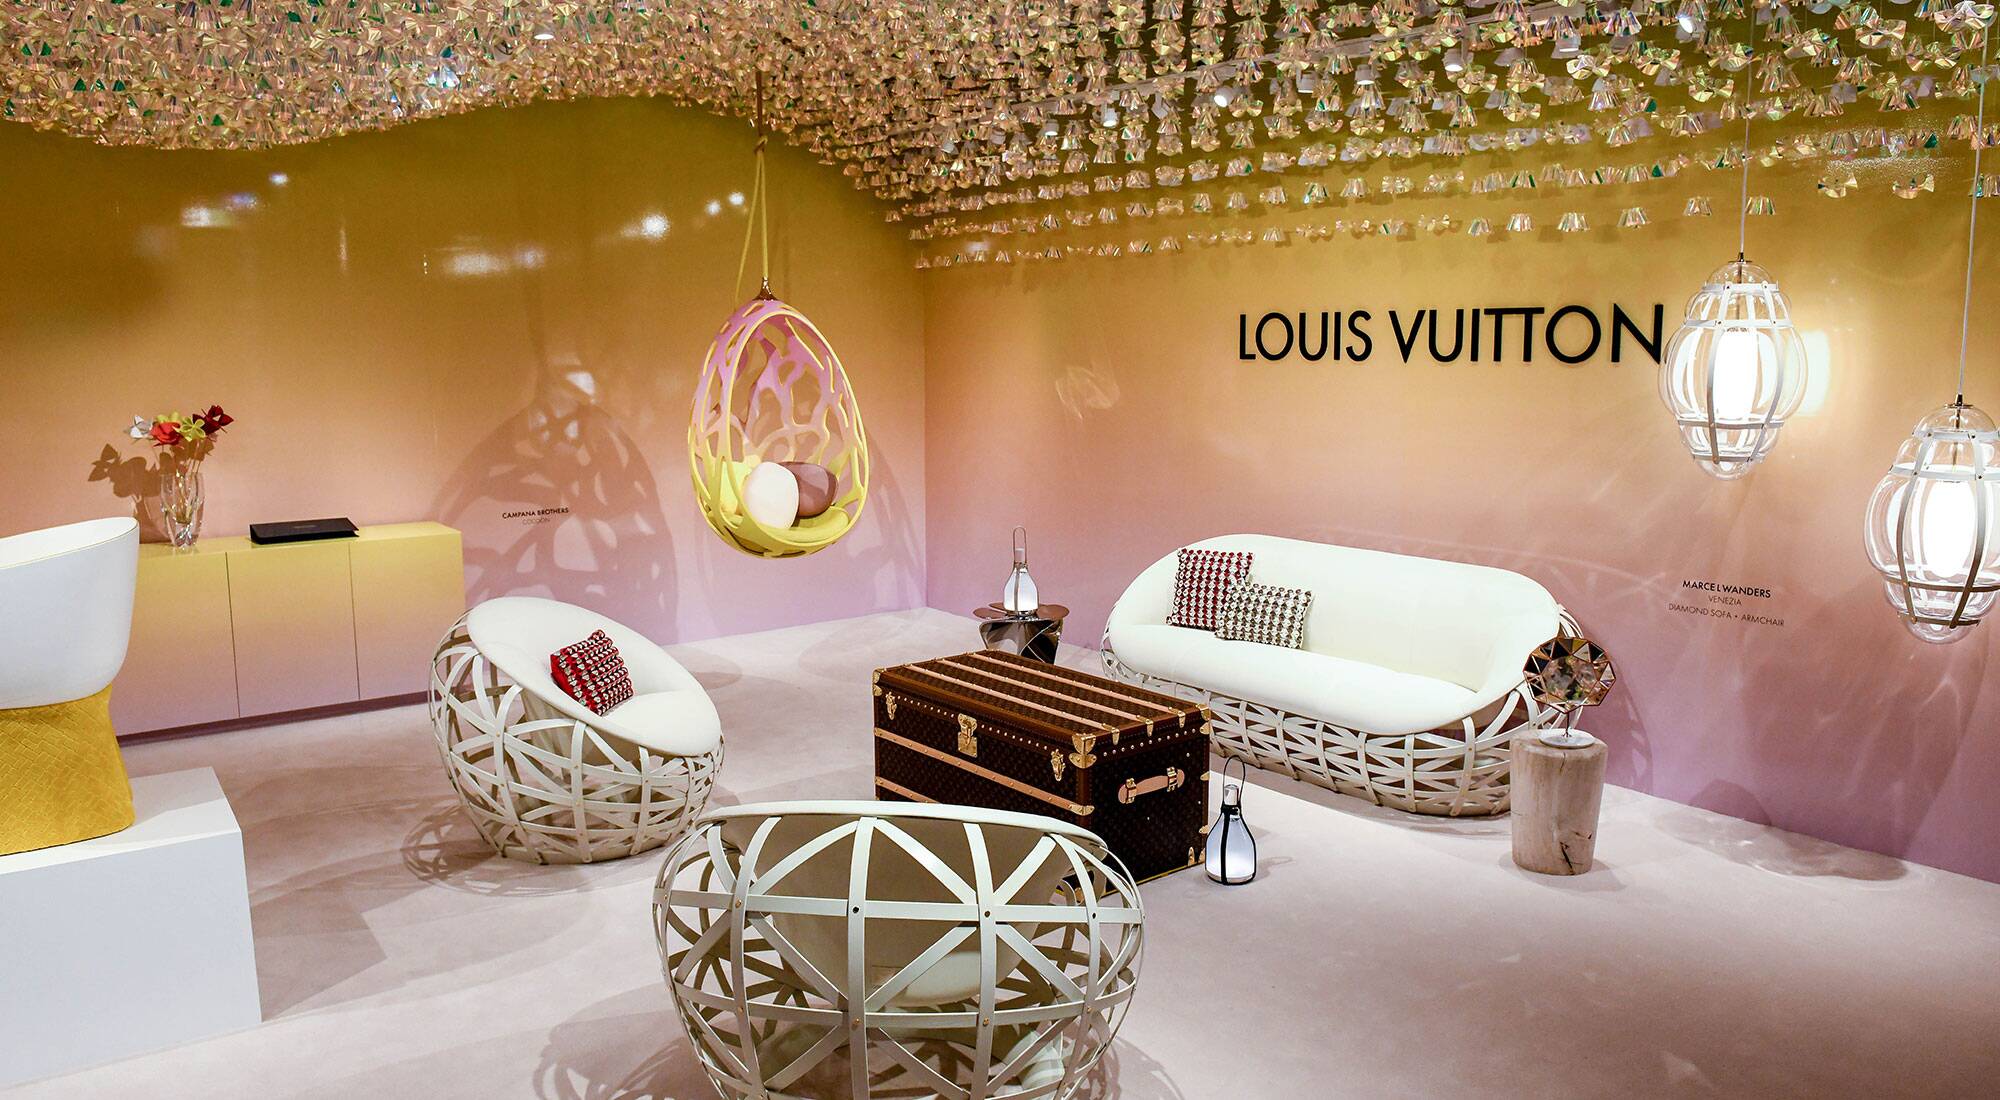 Objets Nomades Keeps Louis Vuitton's Savoir Faire Fresh